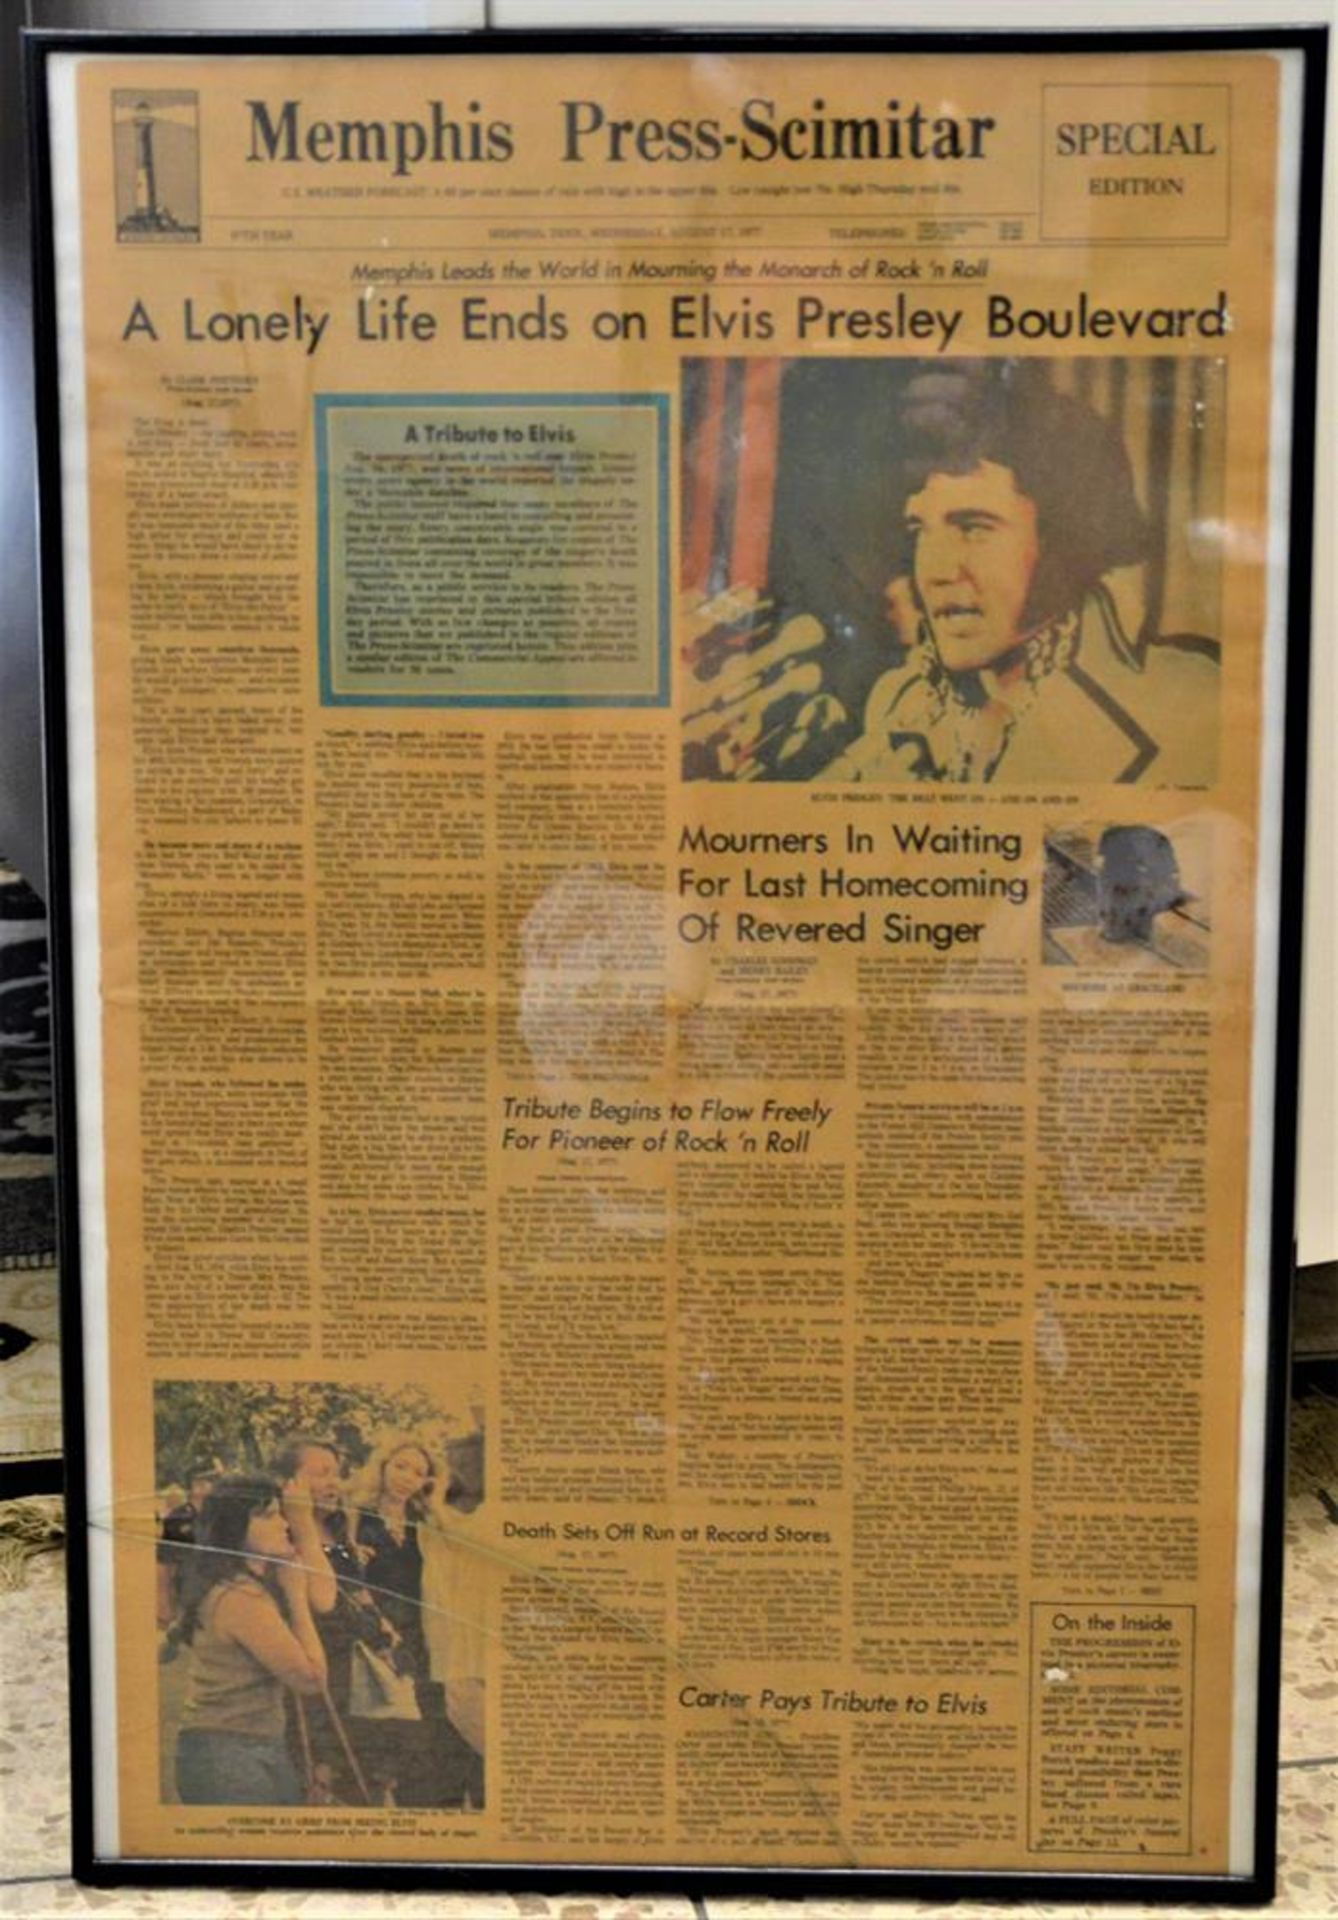 Sonderausgabe Zeitung Memphis Press-Scimitar 17. August 1977, einen Tag nach dem Tod von Elvis